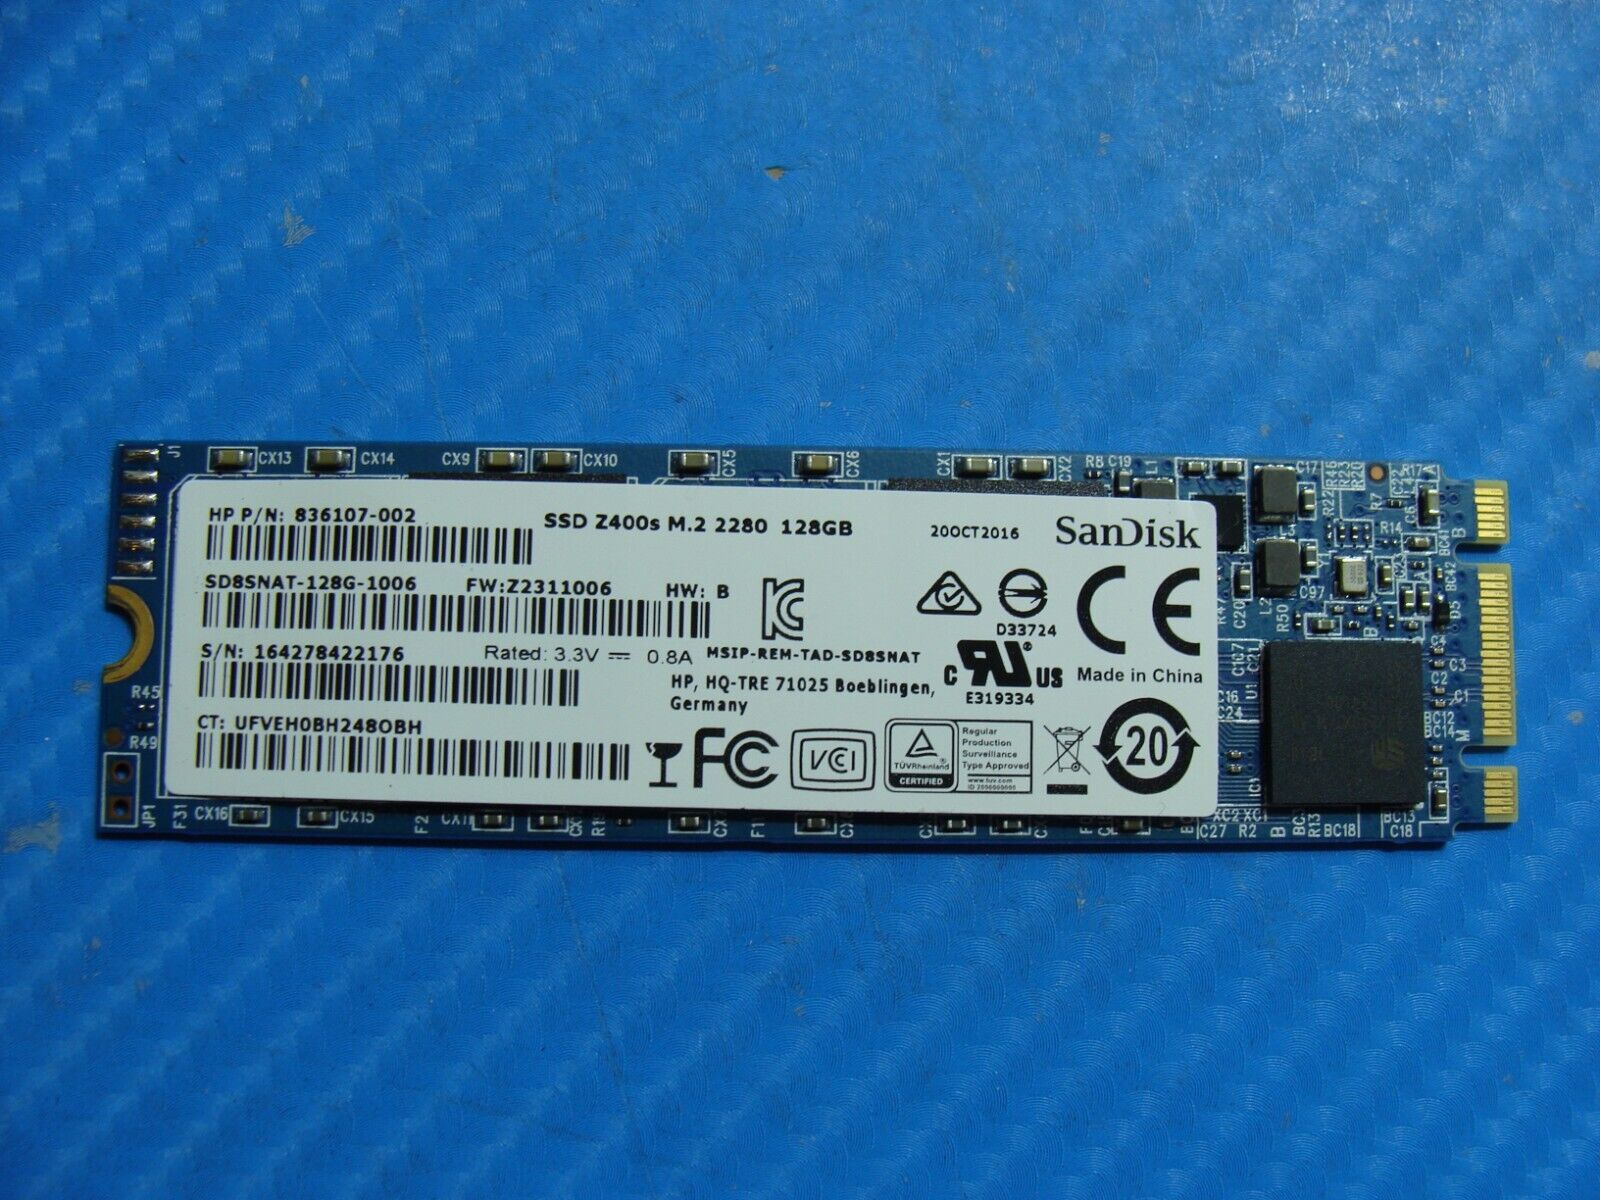 M.2 SSD 64GB 128GB 256GB SATA NVMe Solid State Drive Sandisk Samsung  SKhynix